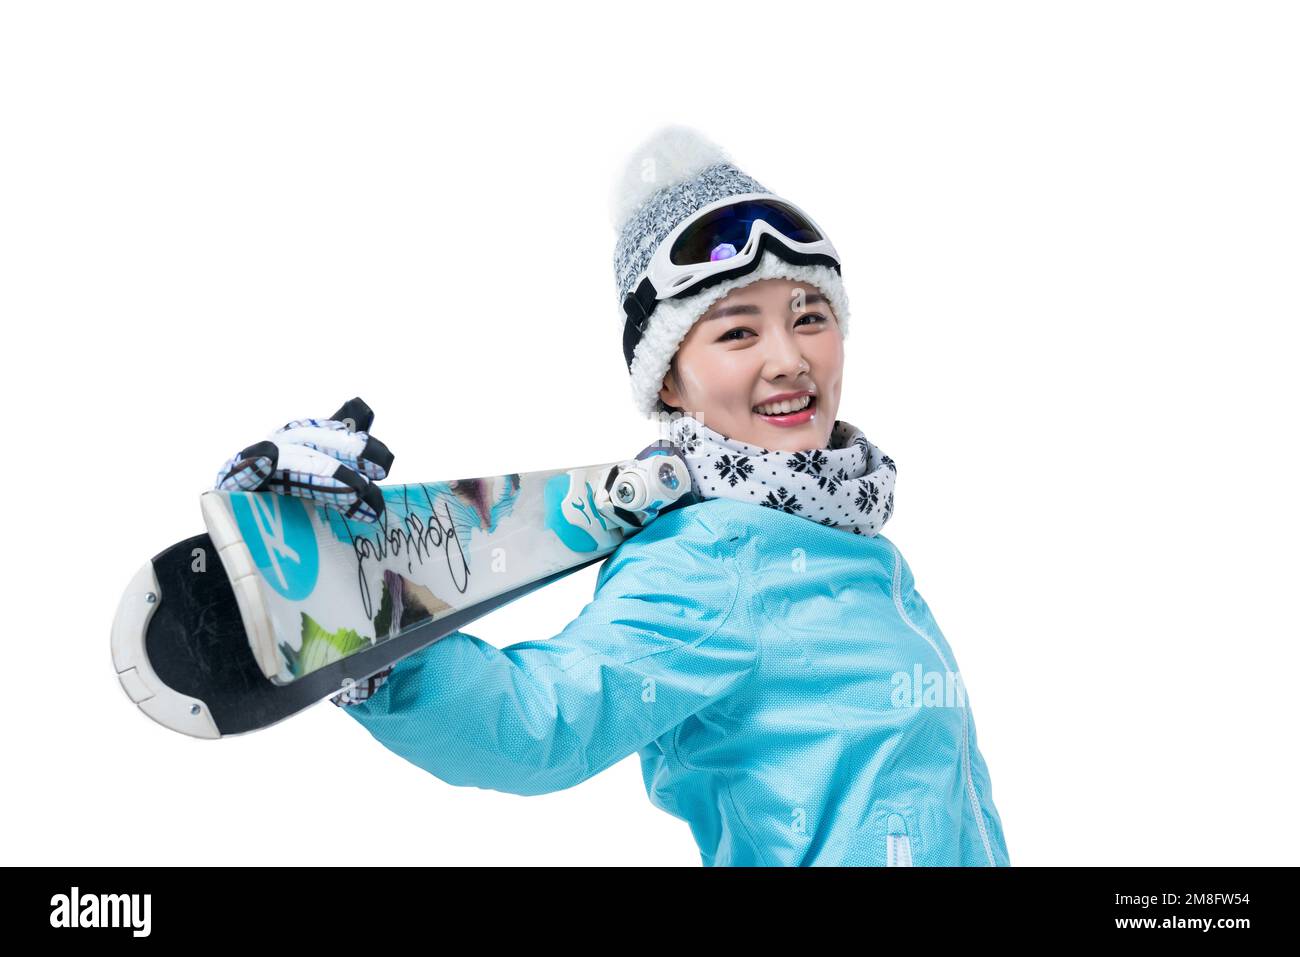 Mujer Joven Sonriente En Gafas De Esquí Que Pone En La Nieve Con Montañas  En El Fondo Fotos, retratos, imágenes y fotografía de archivo libres de  derecho. Image 21002247